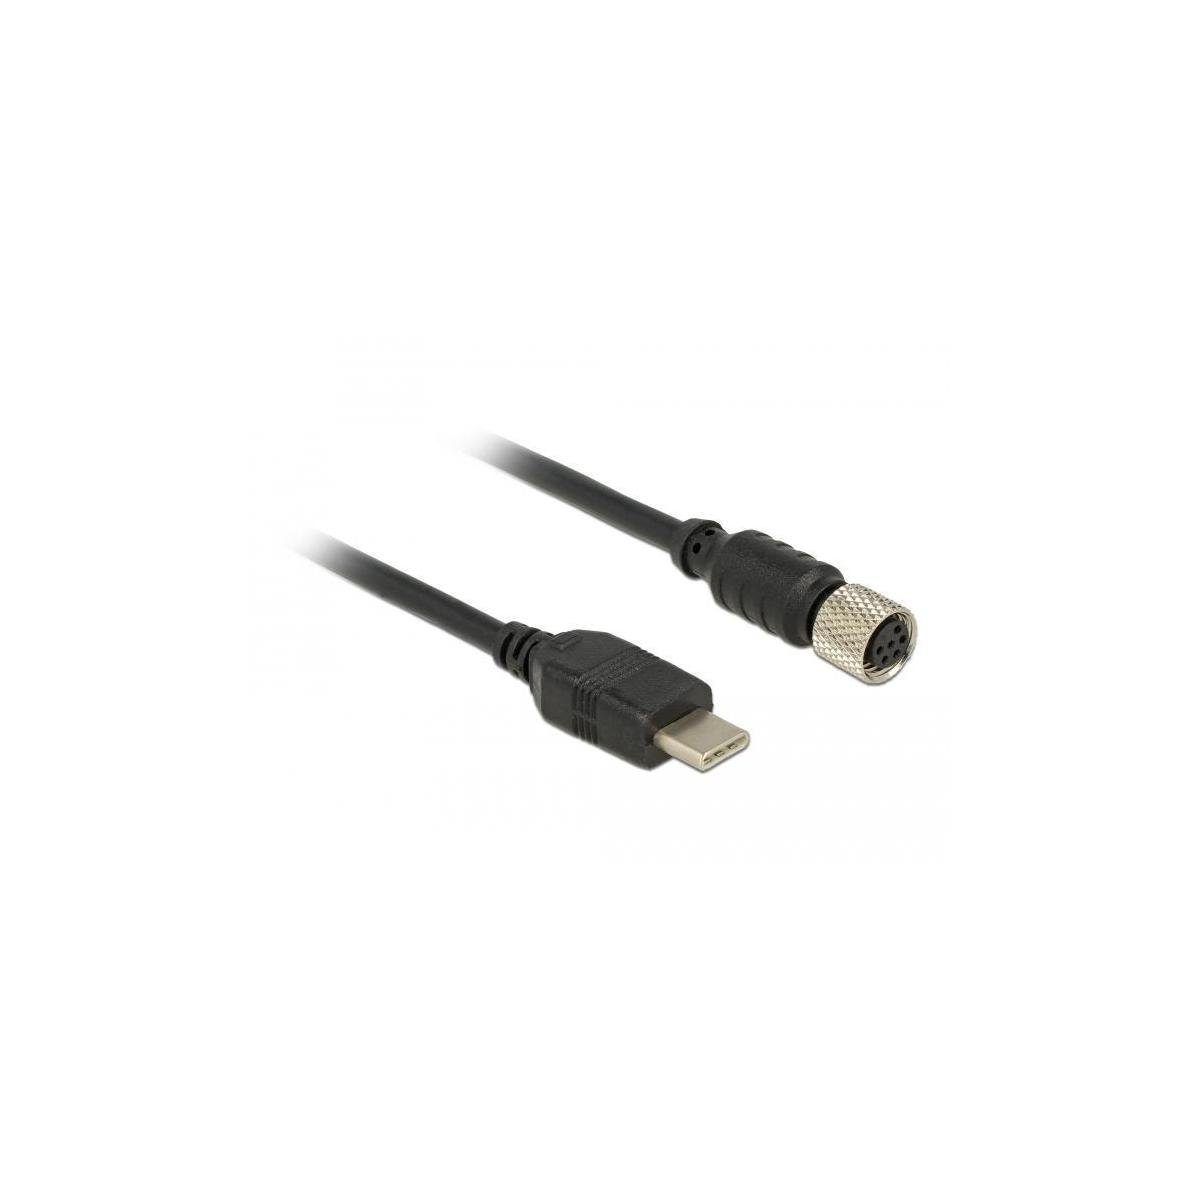 WLAN-Antenne Anschlusskabel USB... Seriell Buchse > Navilock wasserdicht M8